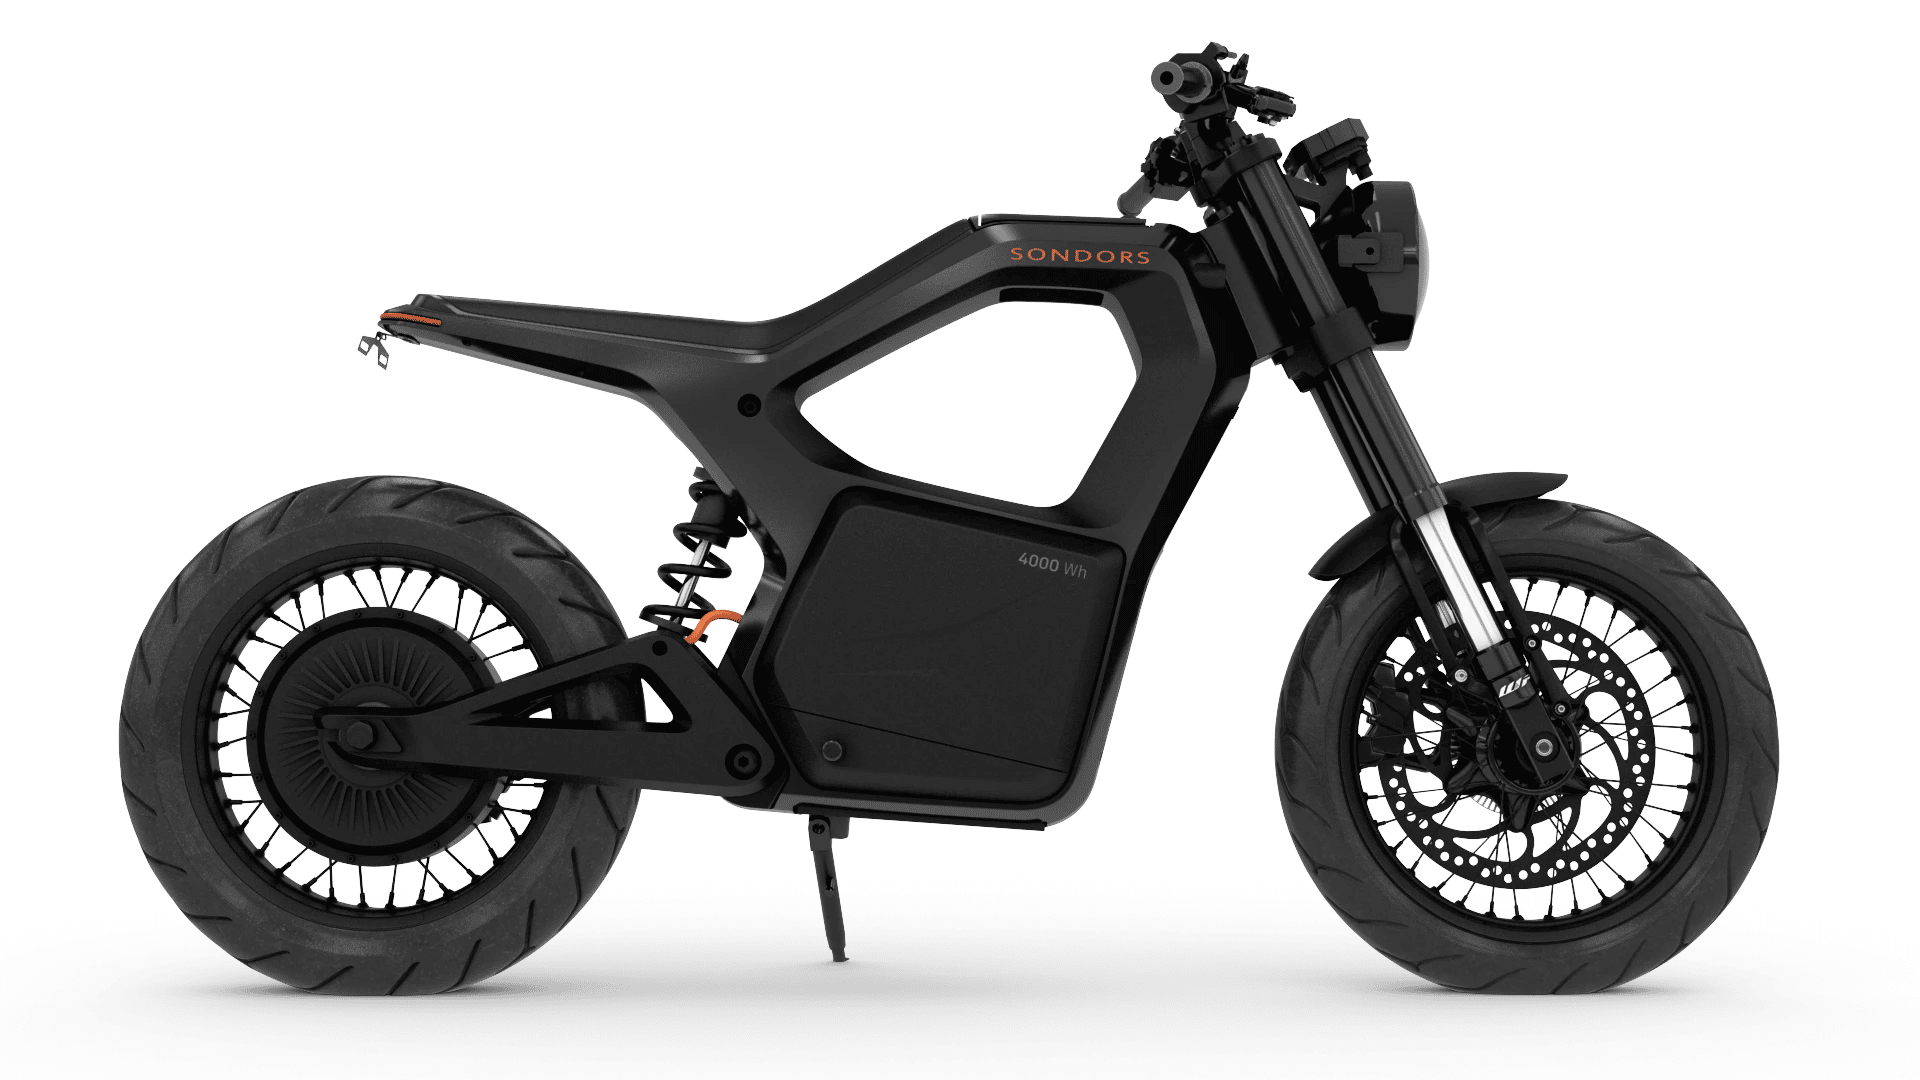 Sondors Metacycle : la moto électrique low-cost enfin prête à être livrée ?